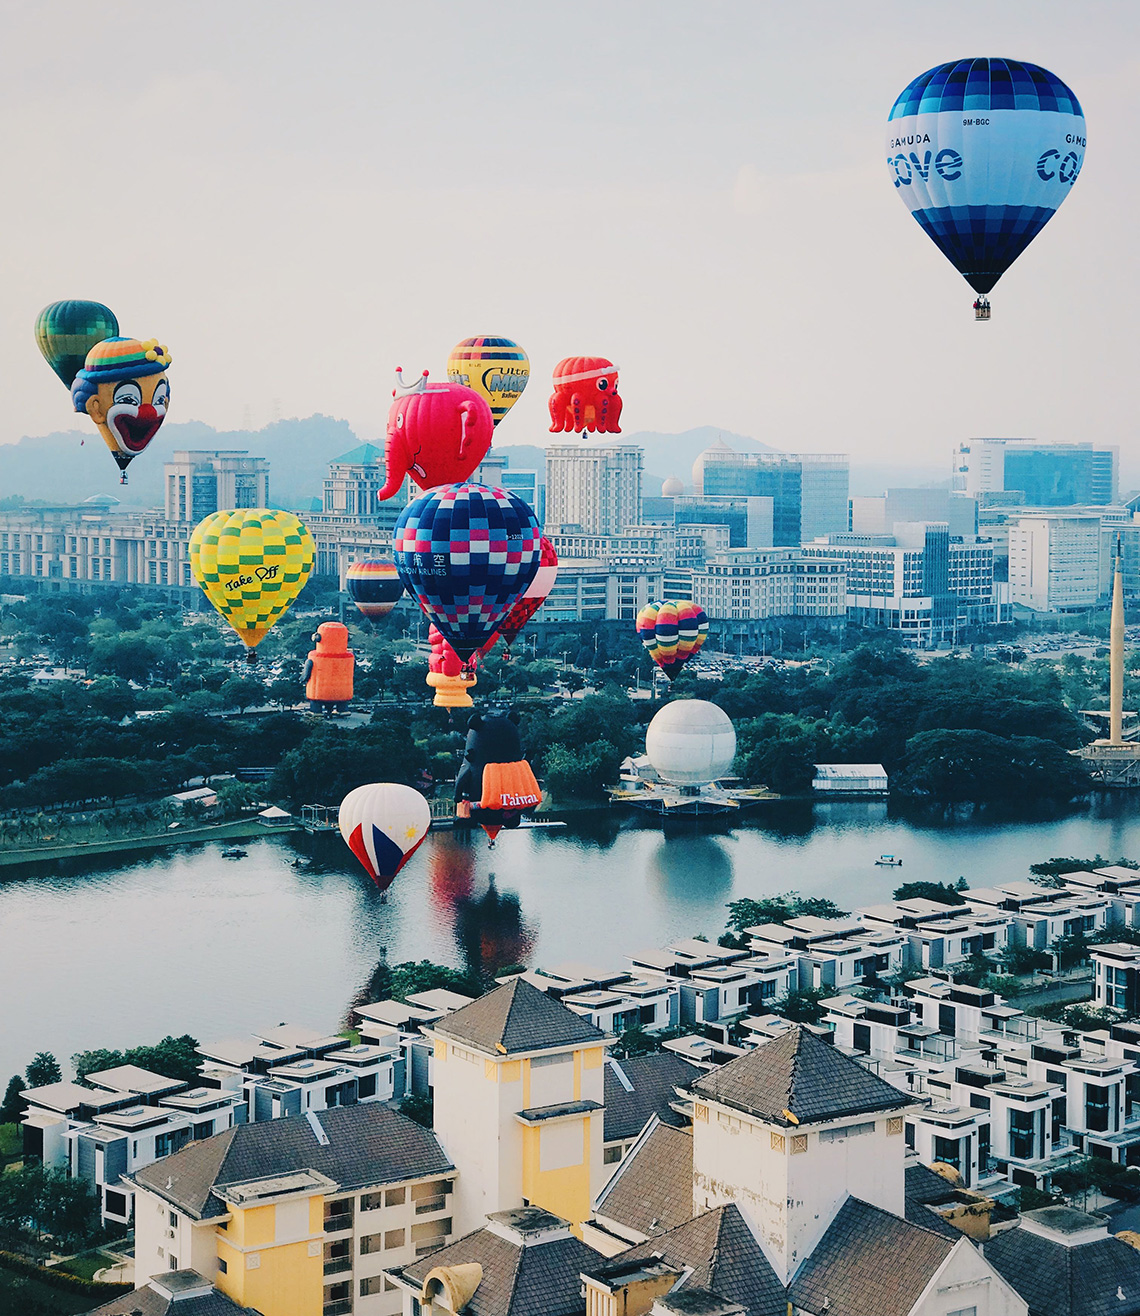 Heteluchtballon festival van Maleisië